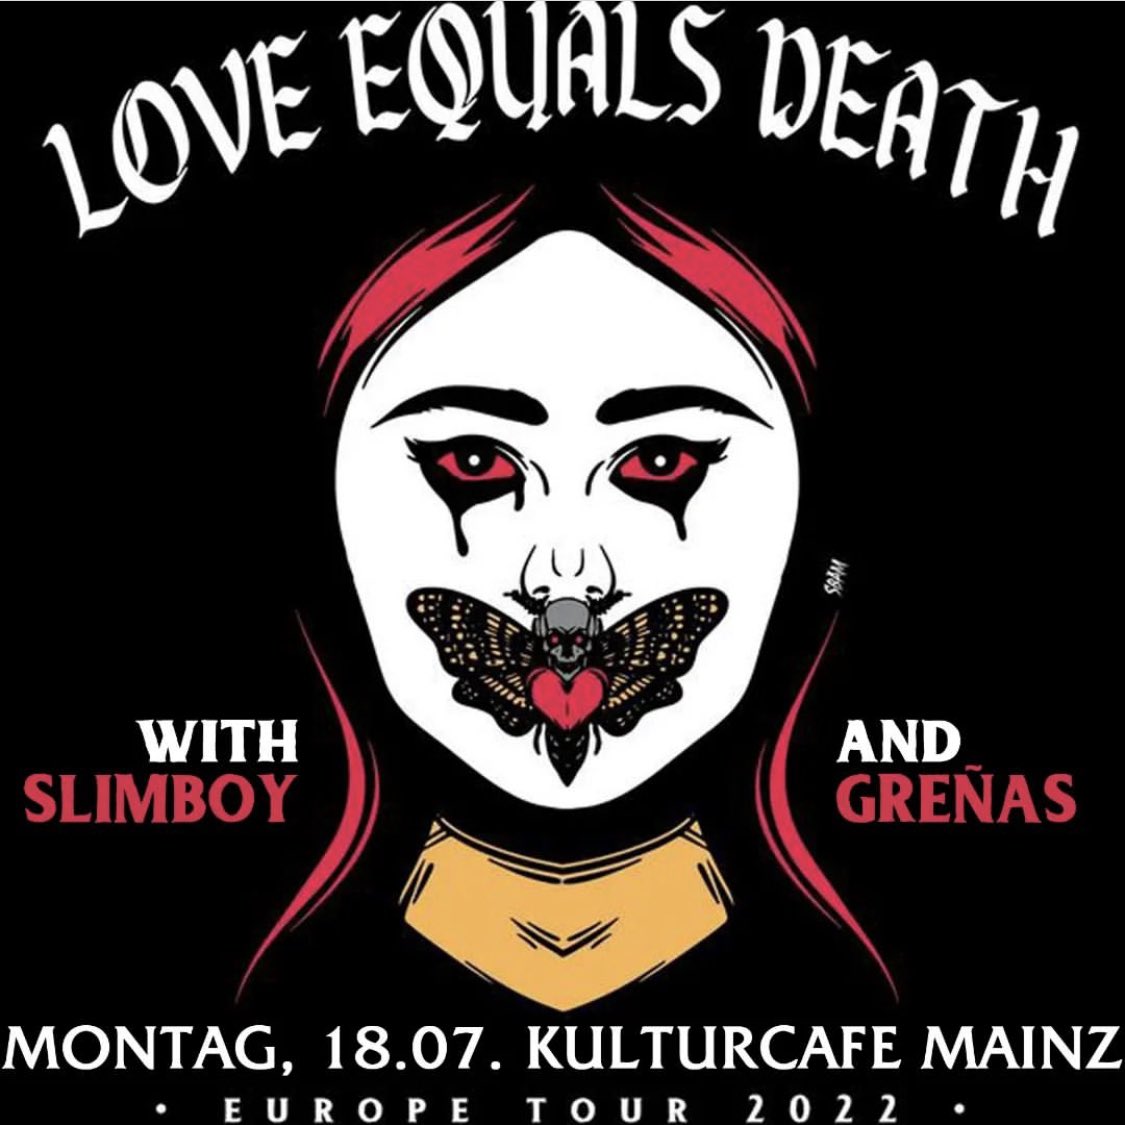 First EU show today in Mainz, Germany with Slimboy at Kulturcafe Mainz